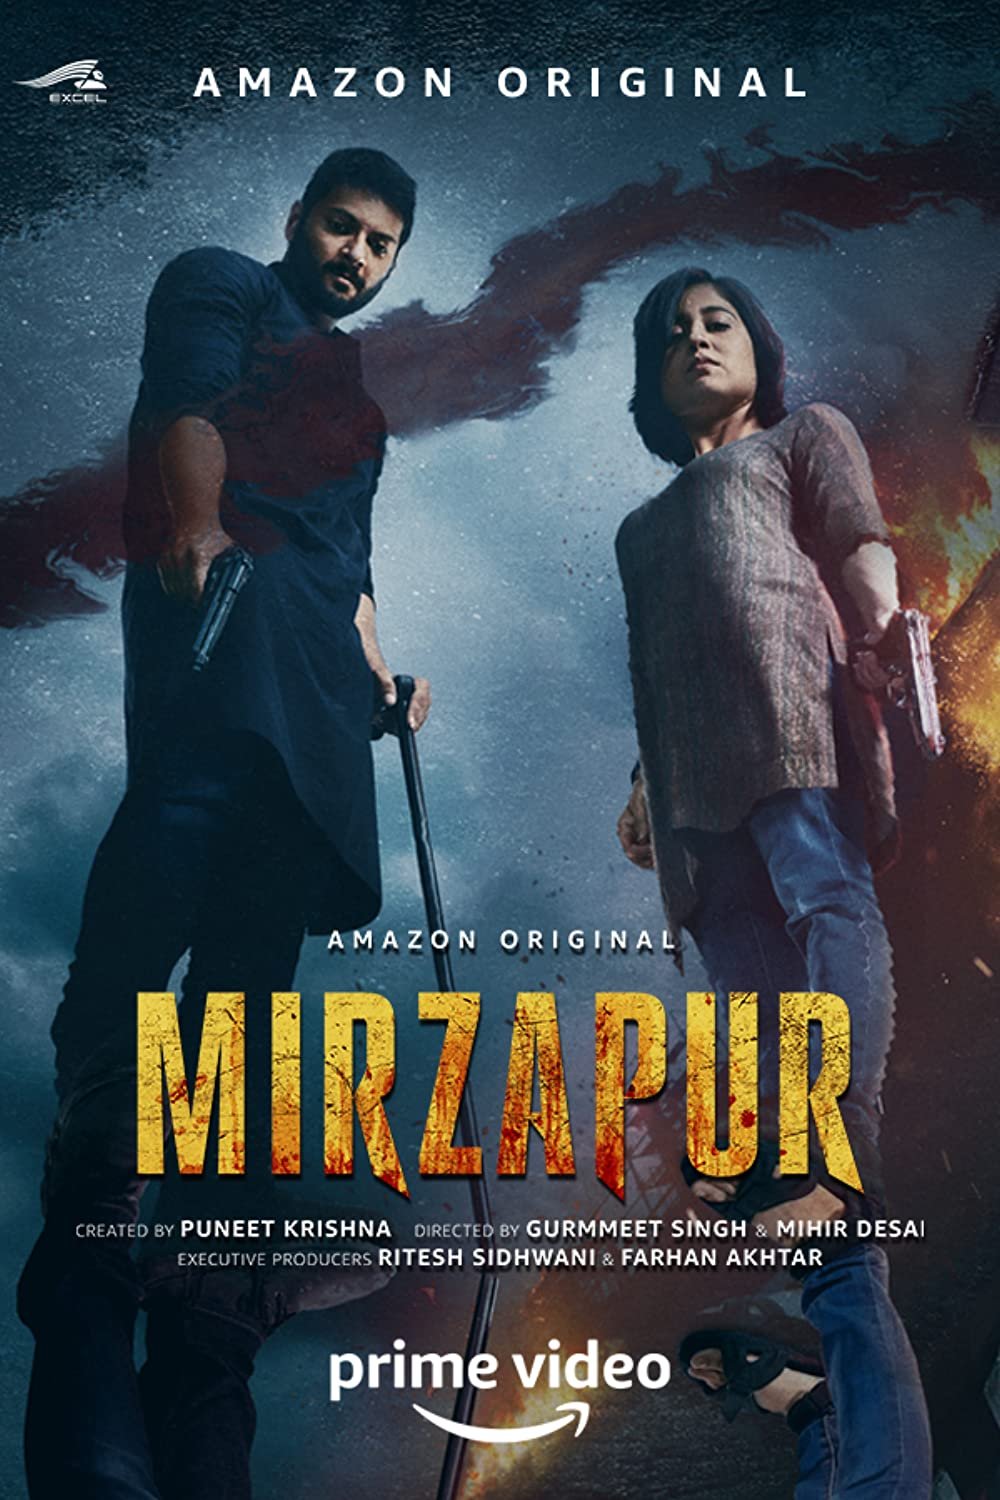 Mirzapur Season 3 पर सुप्रीम कोर्ट ने दी क्लीन चिट, फैंस झूमे - DK Tech  Hindi